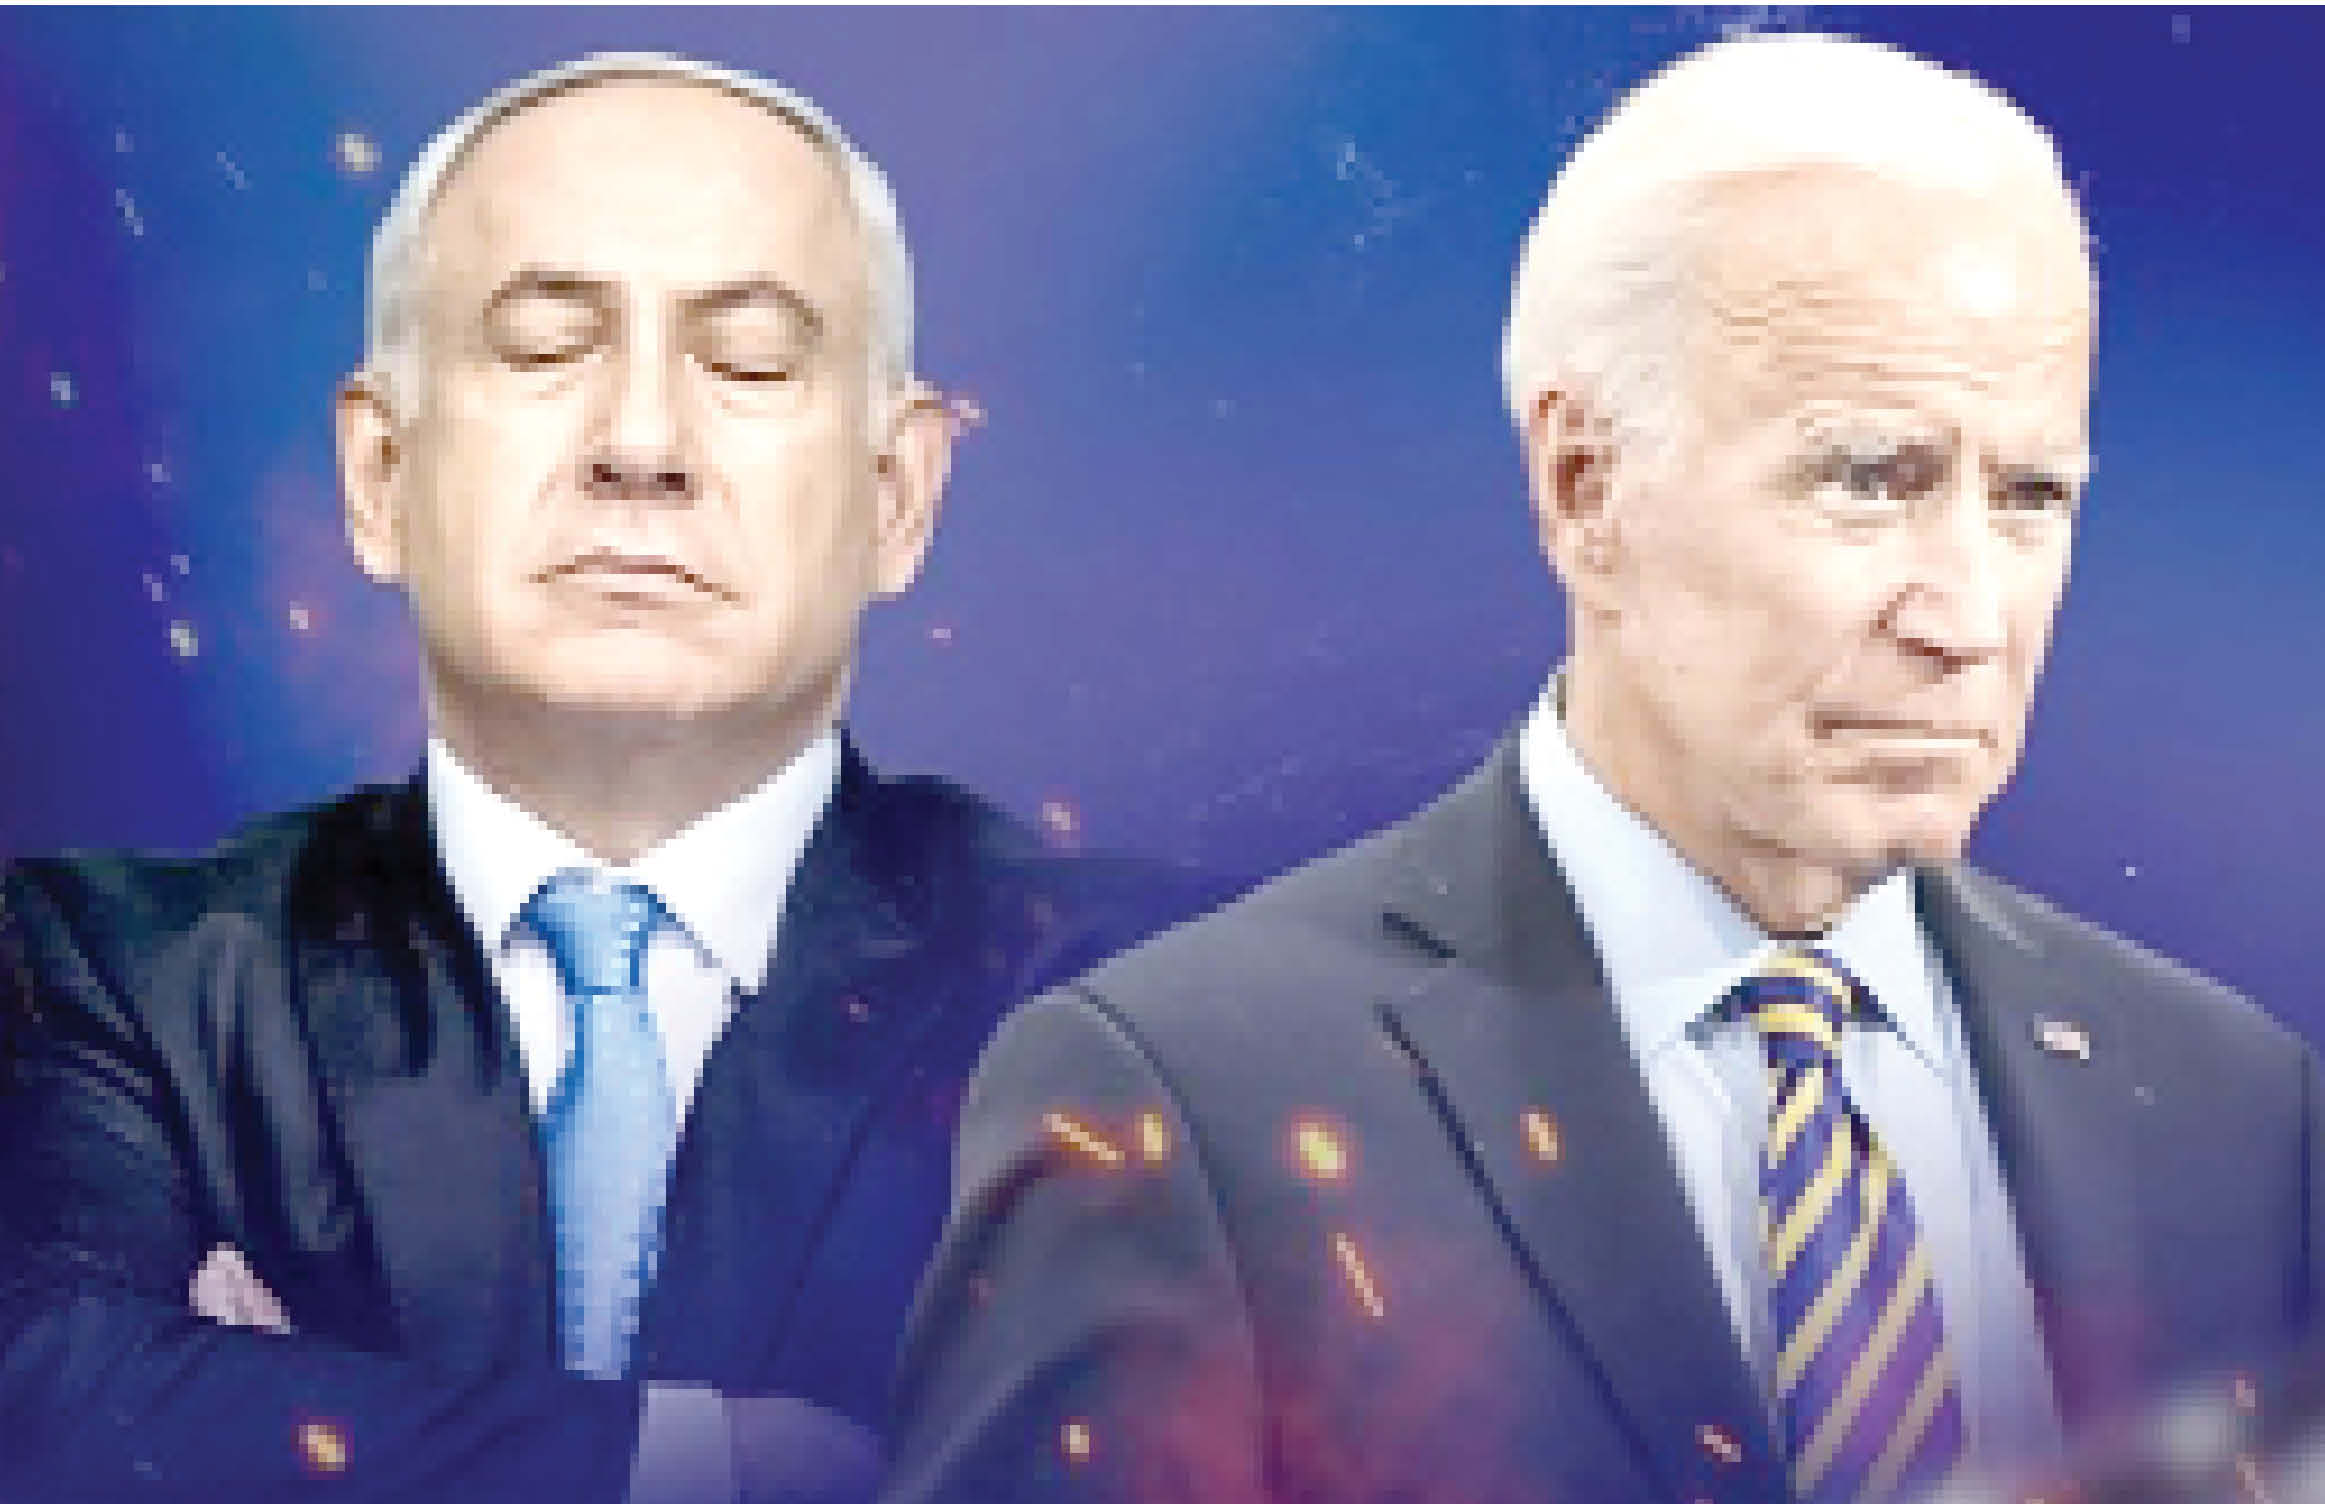 آمریکا و بایدن بازیچه نتانیاهو حتی کاخ سفید را به تل آویو منتقل کنید بازنده اید!